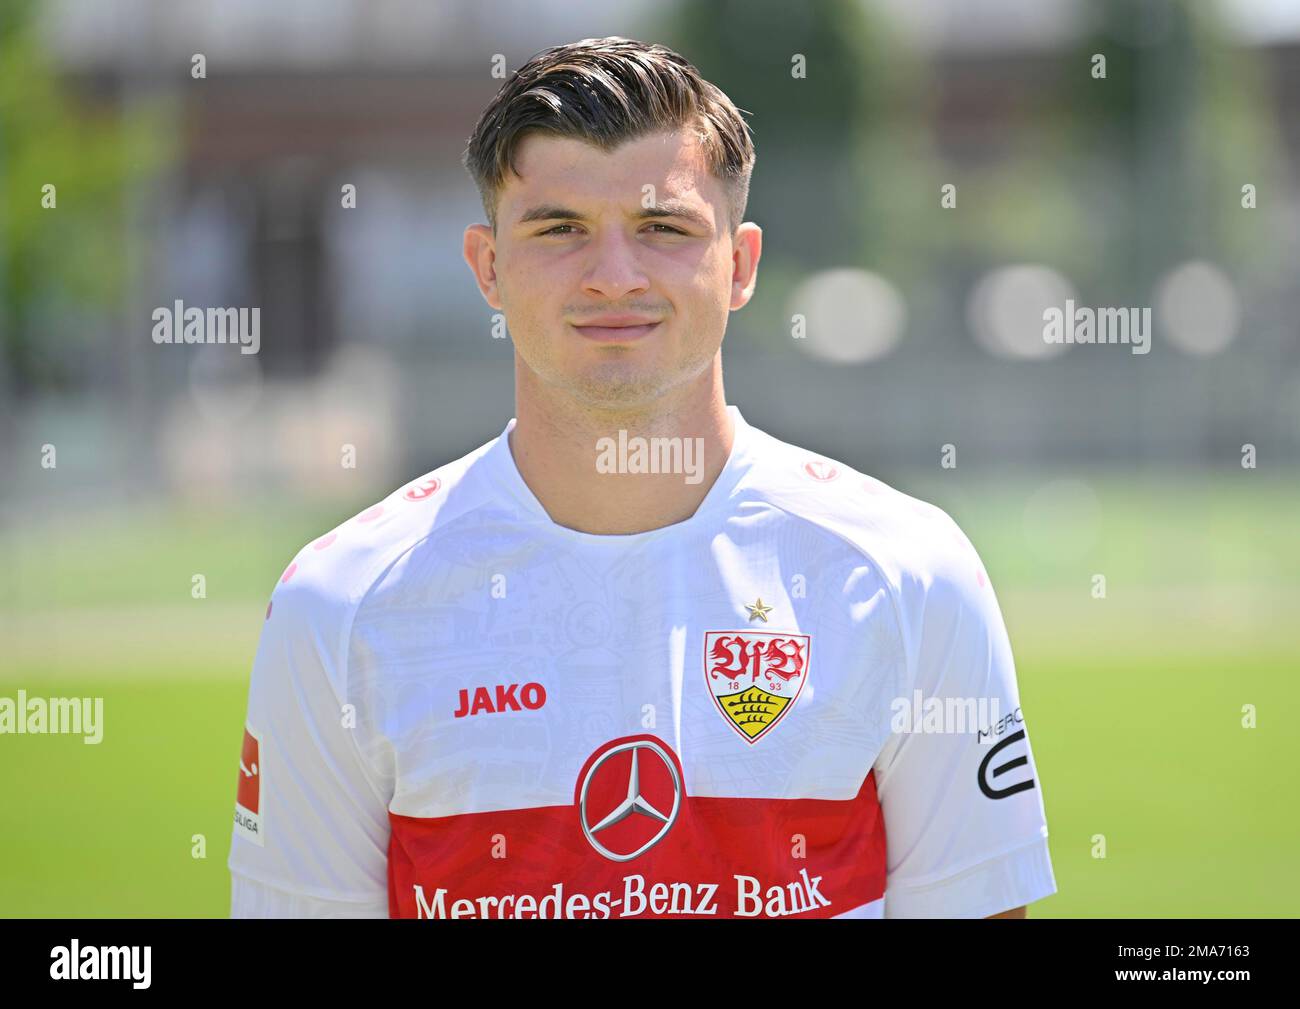 Antonis Aidonis VfB Stuttgart Portraittermin VfB Stuttgart 2022 2023 Licence Player Football 1. Bundesliga Men GER Stuttgart 05. 07. 2022 Stock Photo